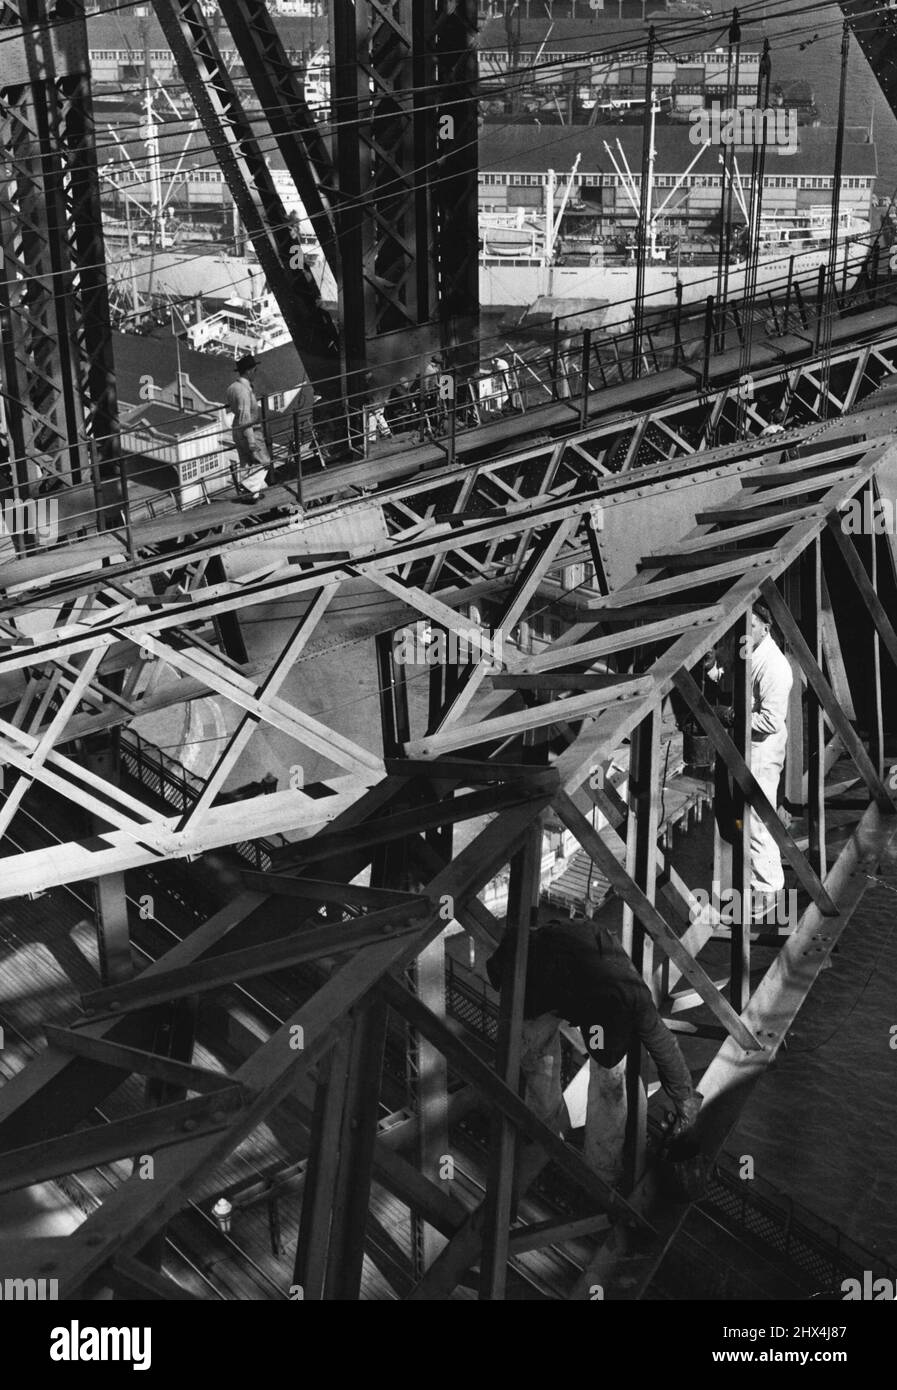 Comme les araignées occupées dans une immense toile d'acier, l'équipe de peintres sur le pont grimpent de manière non chalante au sujet de leur travail. 01 février 1951. Banque D'Images